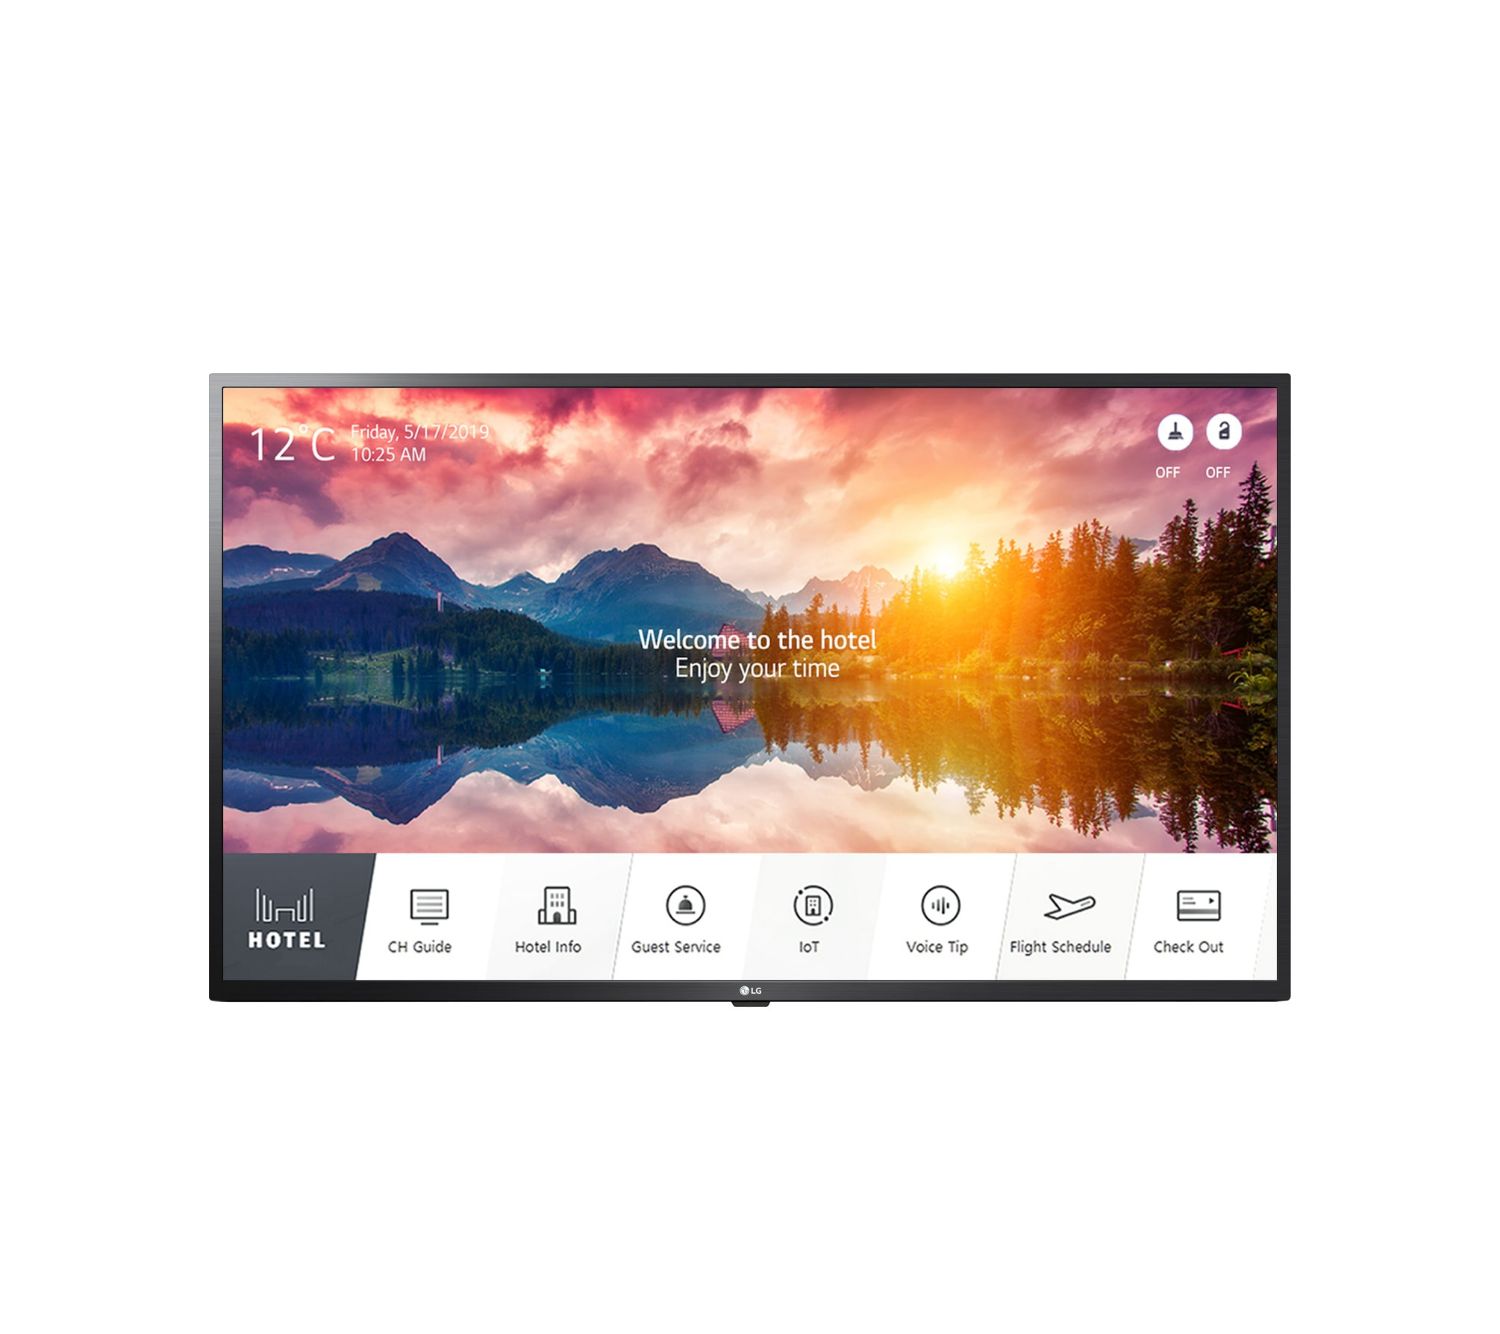 43US662H9ZC - Televisor LG Modo Hotel Interactiva, funciones Smart, resolucin UHD (3840x2160) Color Negro Ceramico. NO viene incluida la peana.